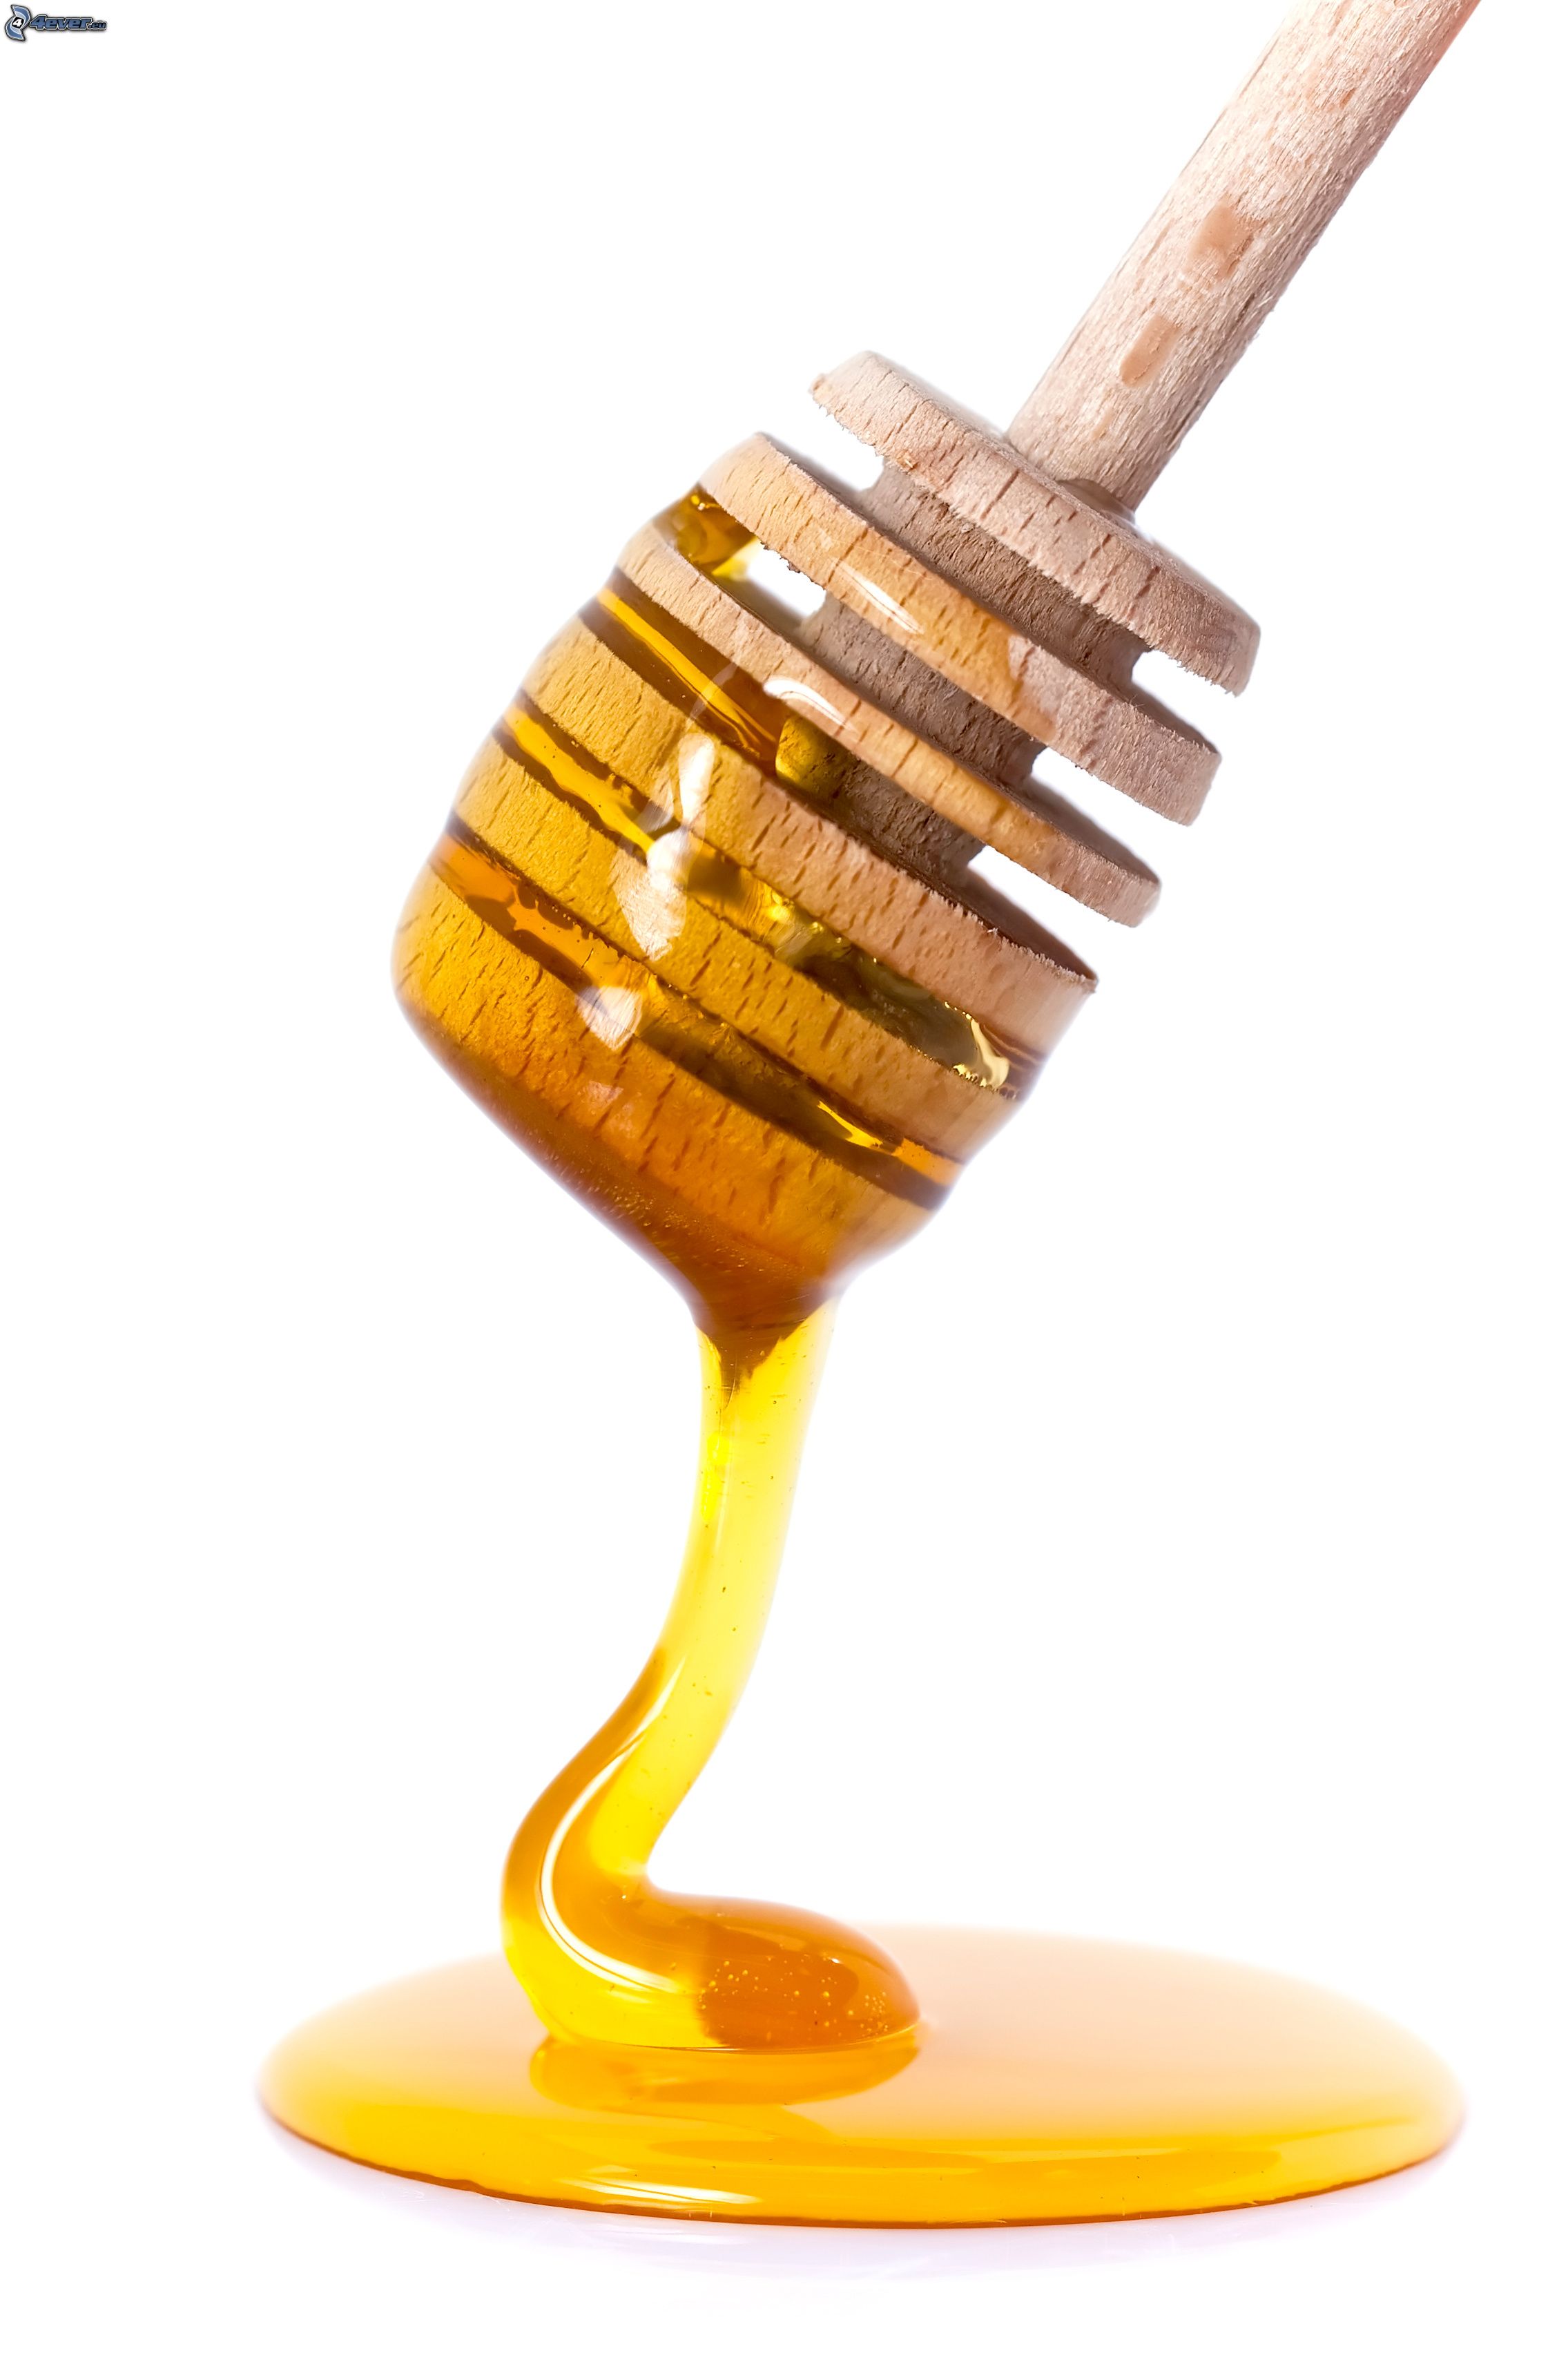 Bâton de miel image stock. Image du remède, cuisinier - 21130663